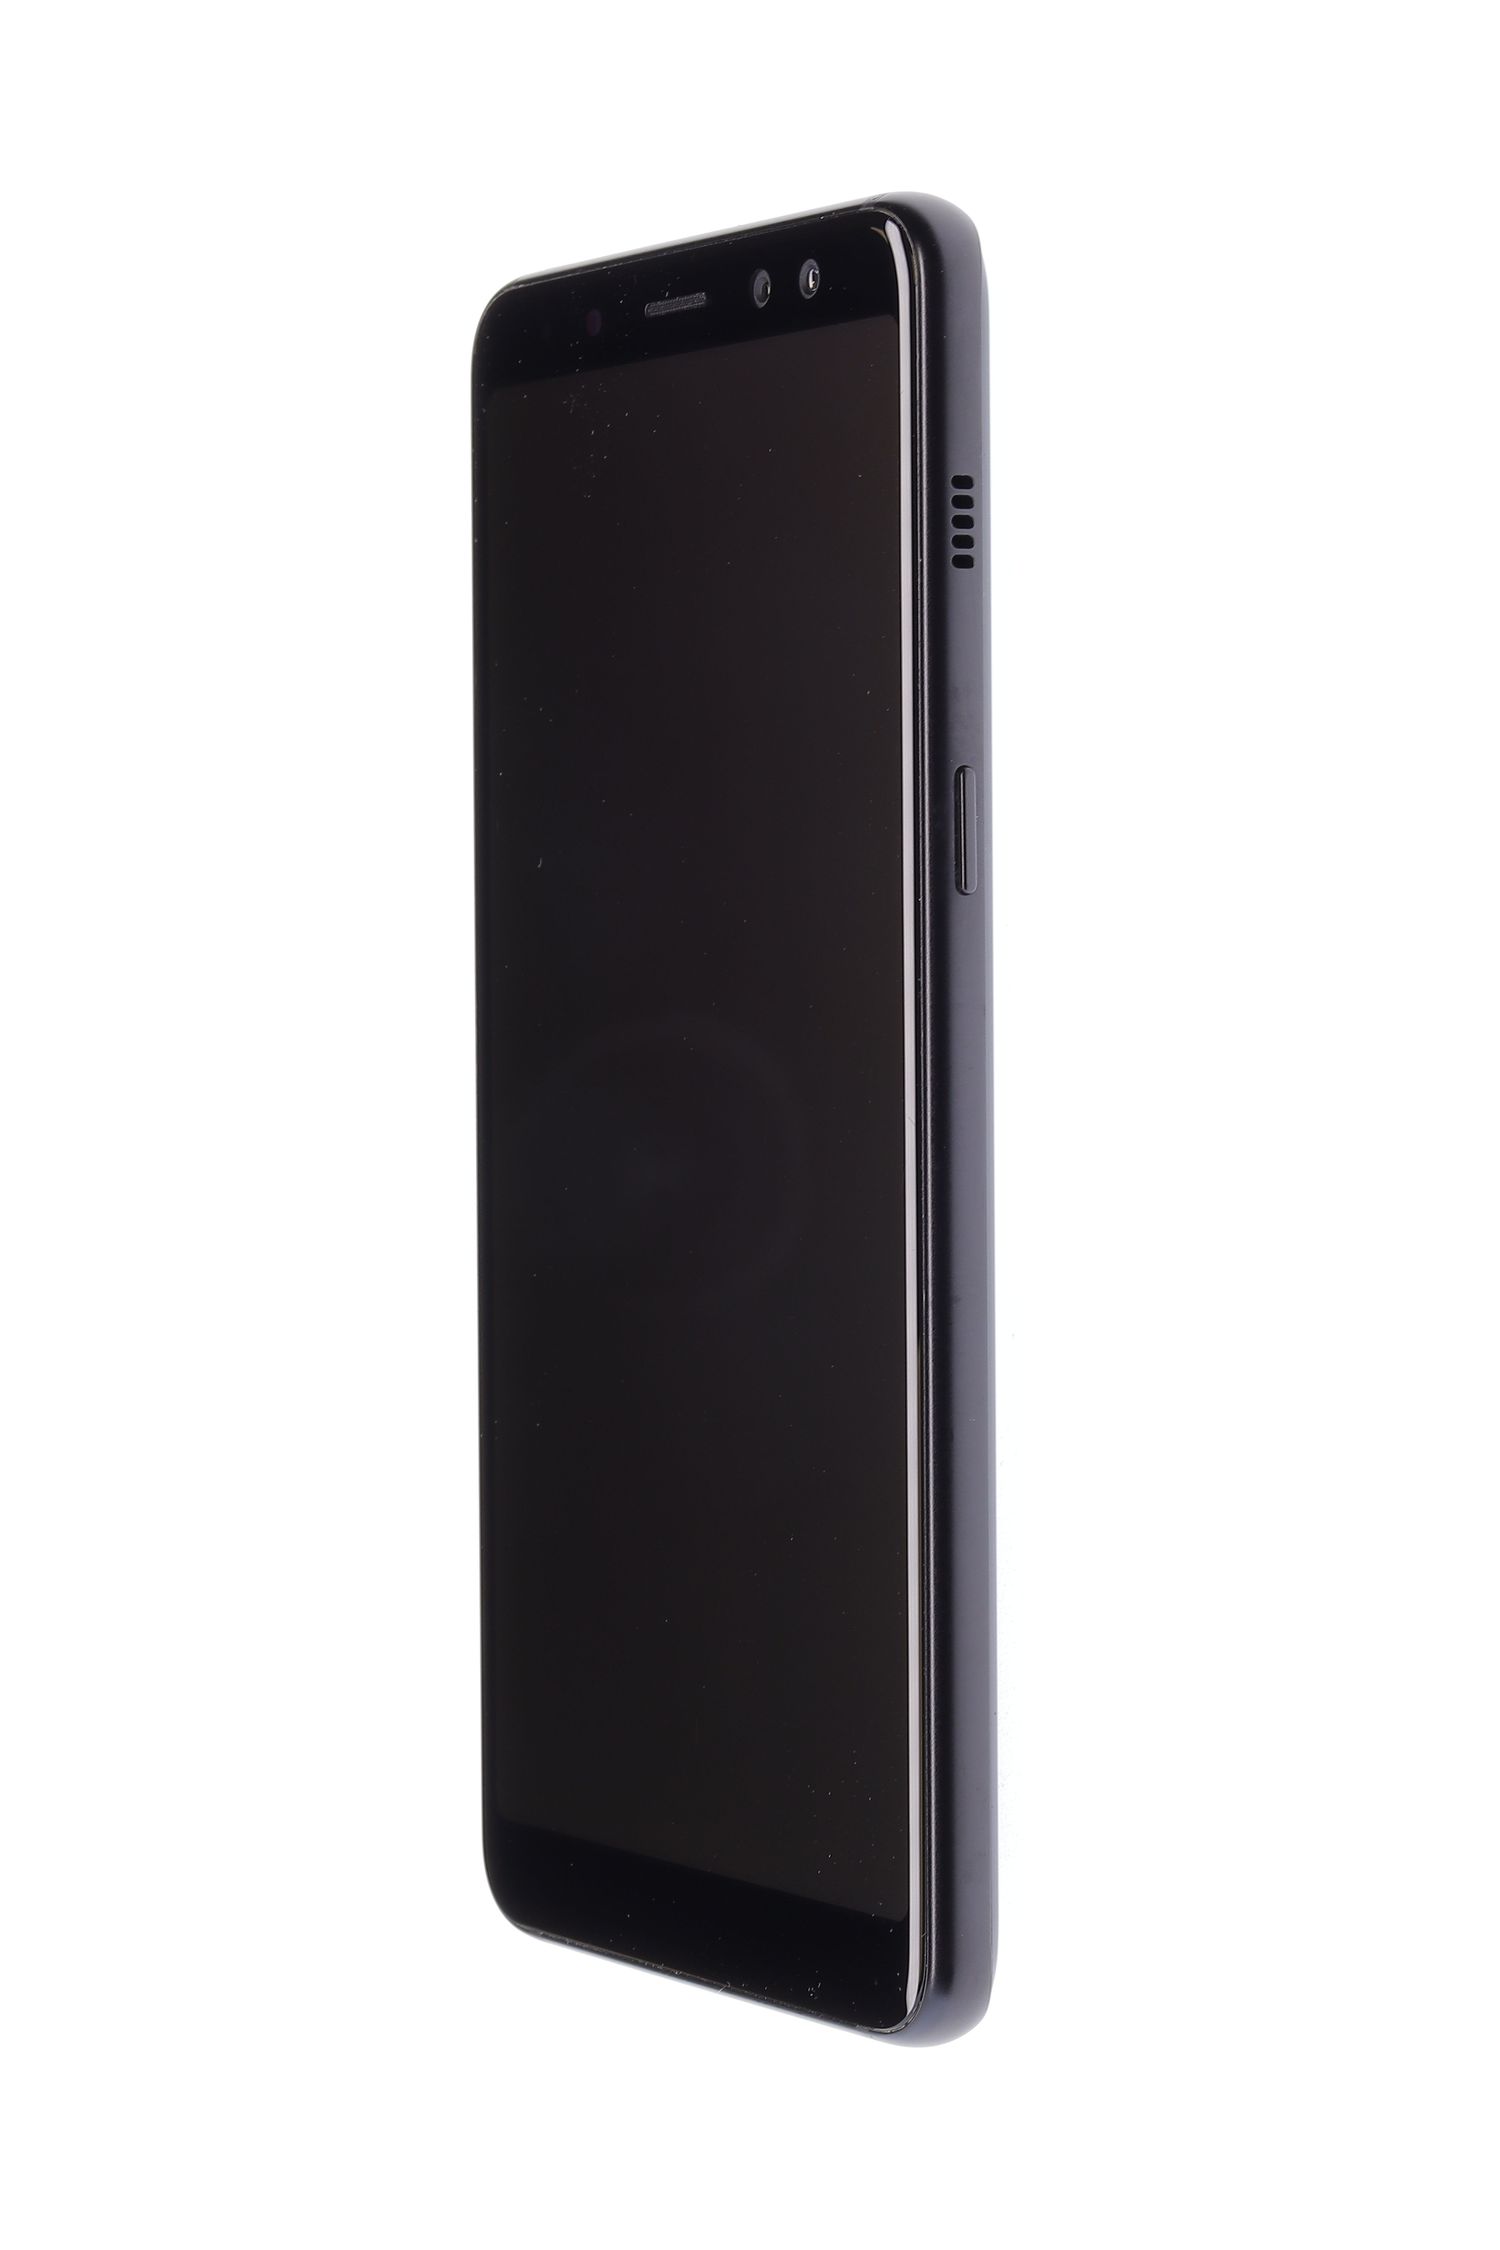 Κινητό τηλέφωνο Samsung Galaxy A8 (2018), Black, 32 GB, Bun